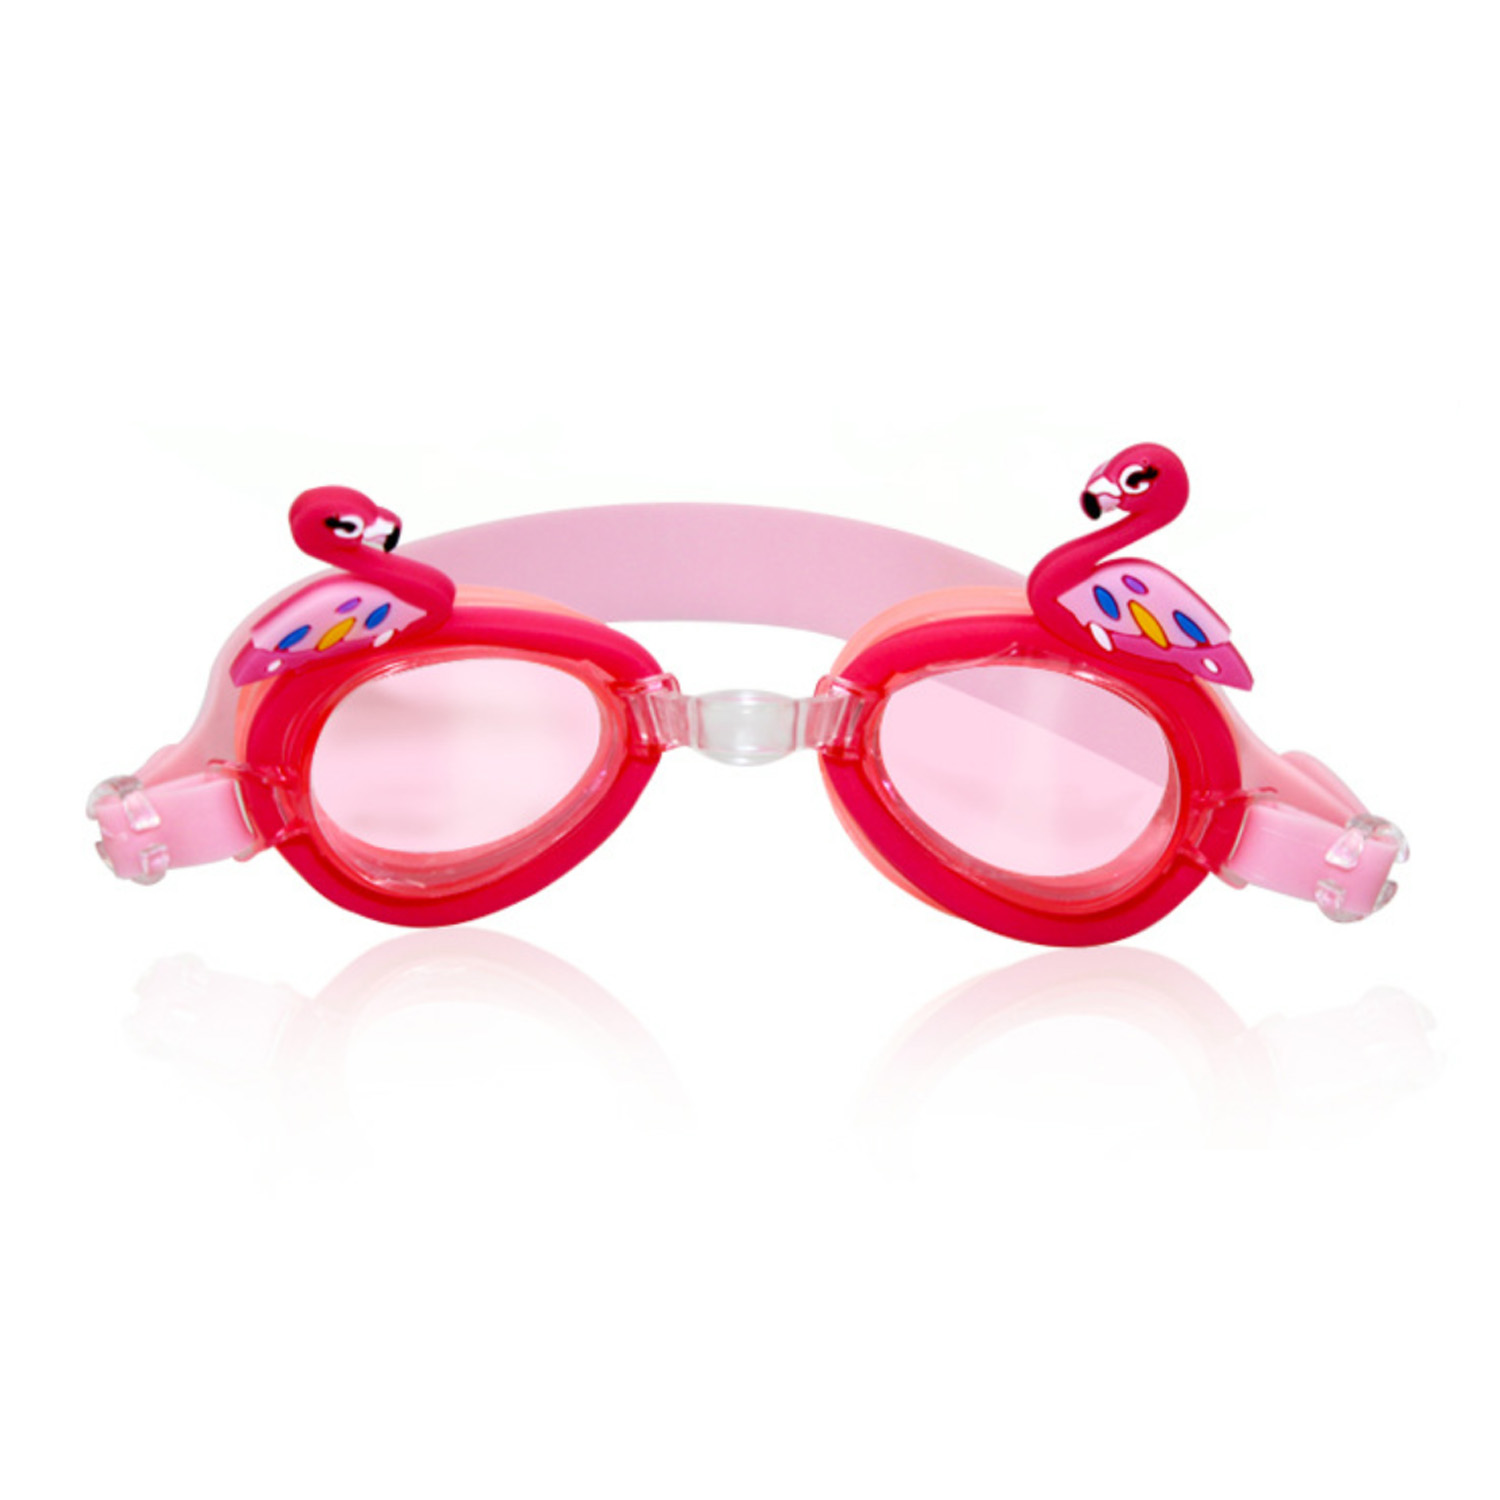 มุมมองเพิ่มเติมเกี่ยวกับ แว่นตาว่ายน้ำ เด็ก ลายยูนิคอร์น แฟนซี รูปสัตว์ - แว่นว่ายน้ำ สำหรับเด็ก การ์ตูน น่ารัก rn สีชมพู - สินค้าส่งจาก ไทย